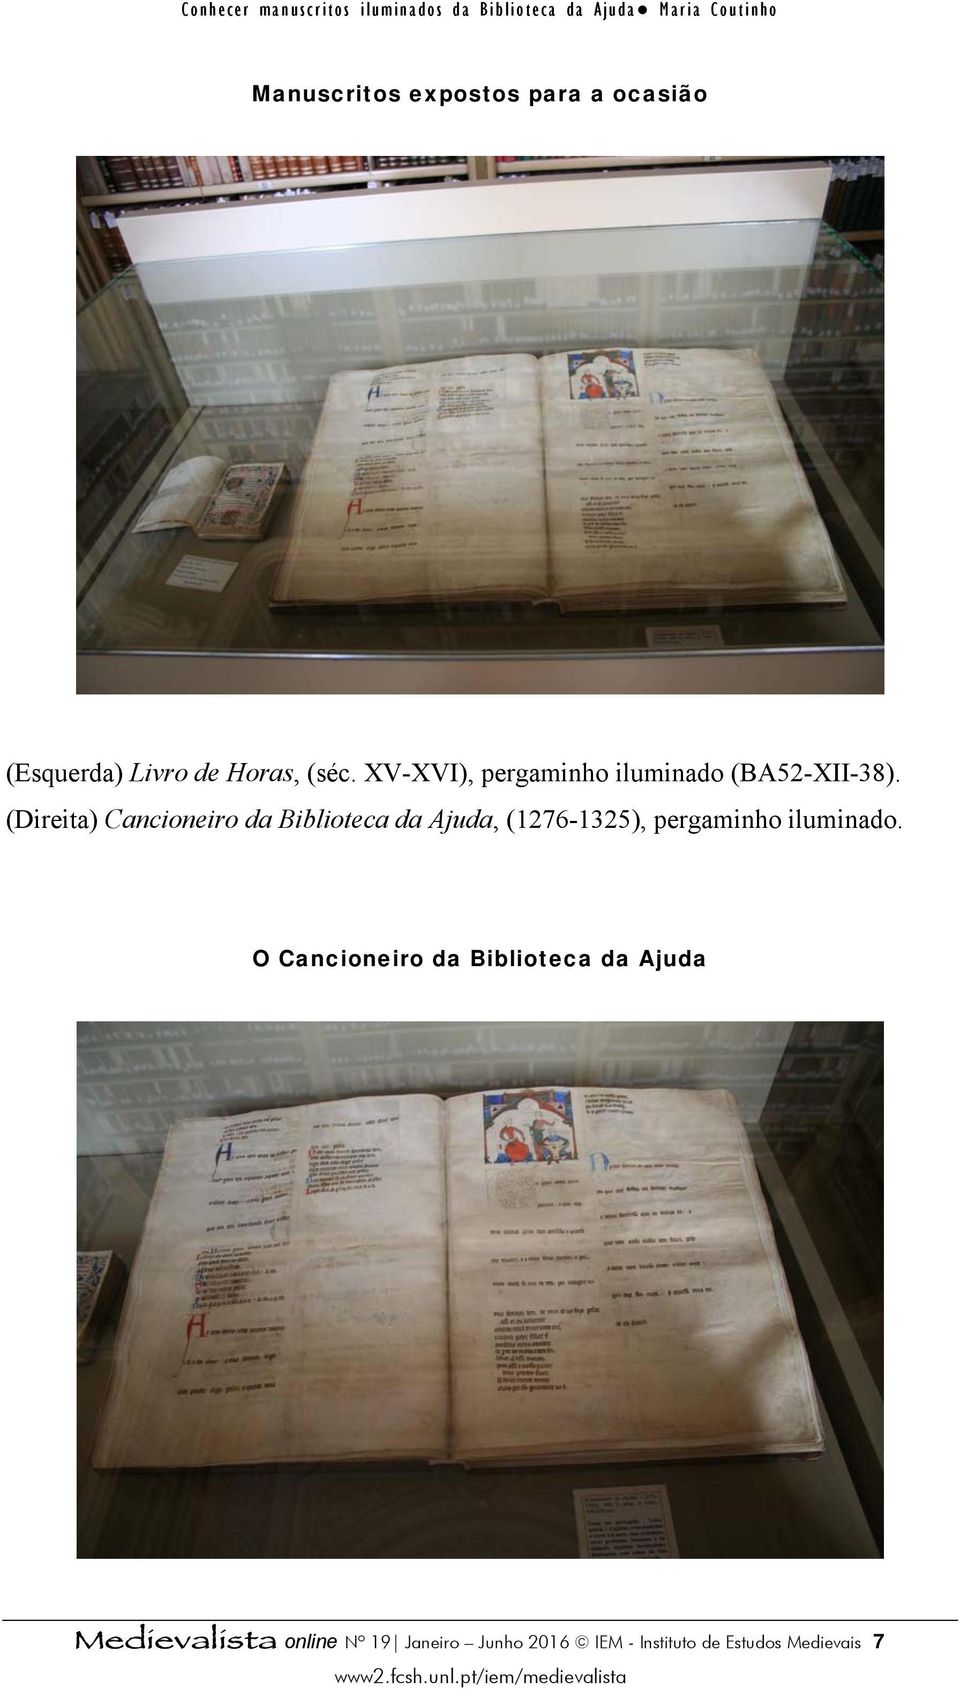 (Direita) Cancioneiro da Biblioteca da Ajuda, (1276-1325), pergaminho